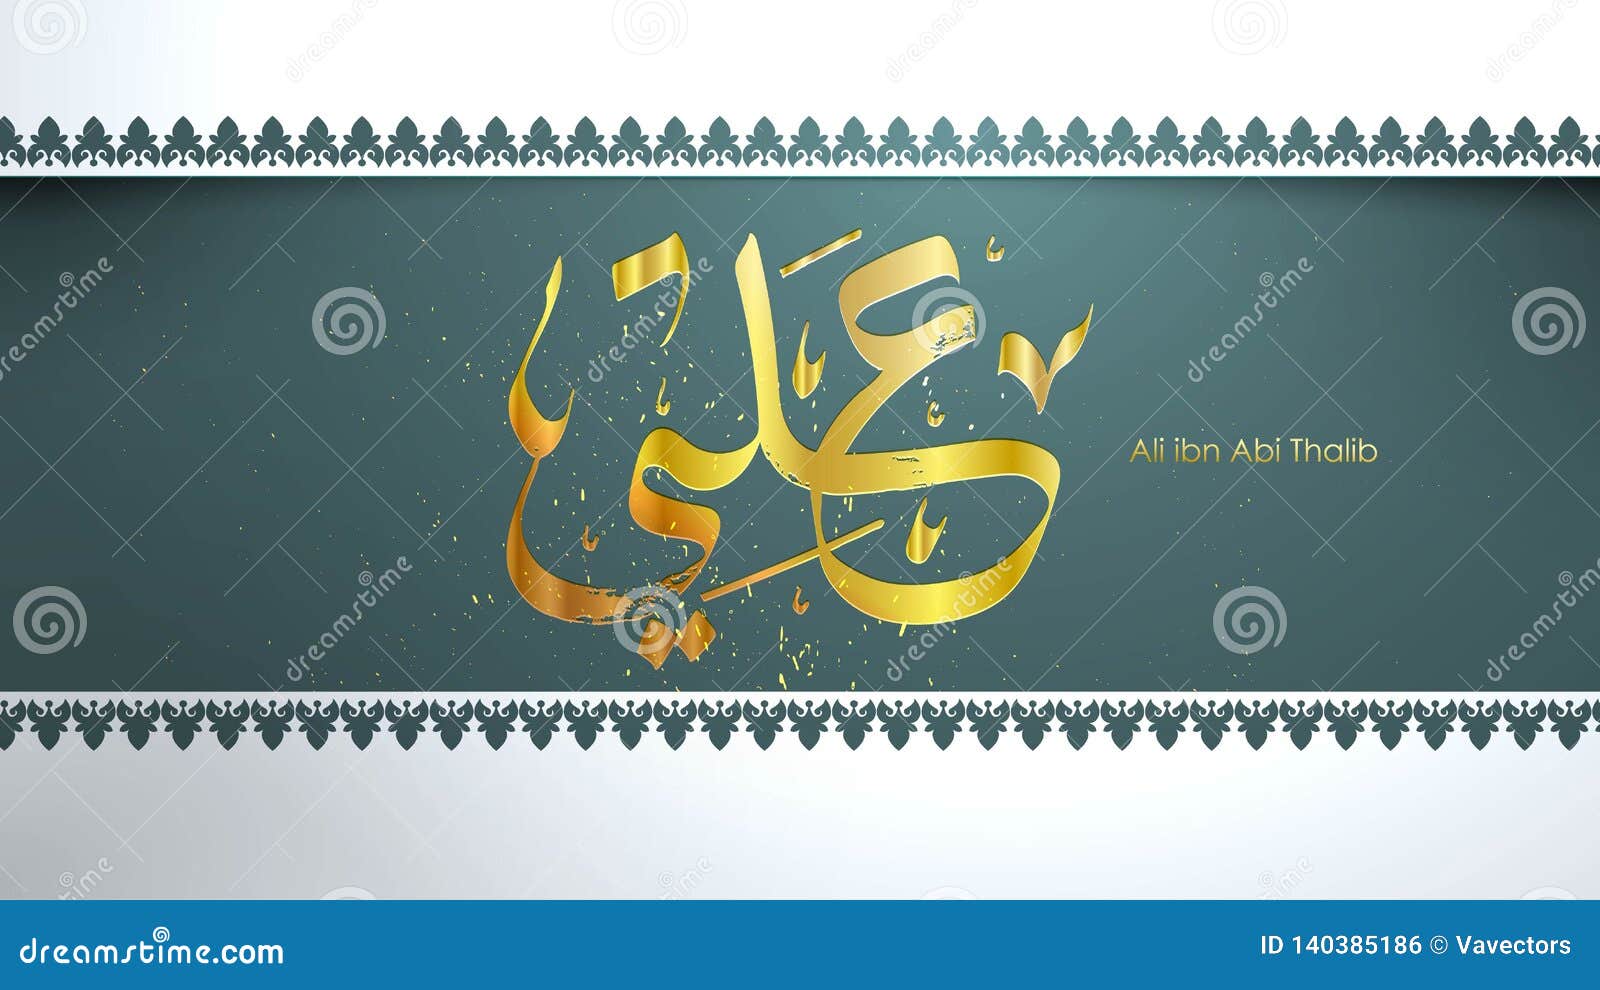 Arabic Hazrat Ali  Bin  Abi  Thalib  Greeting Card Template 